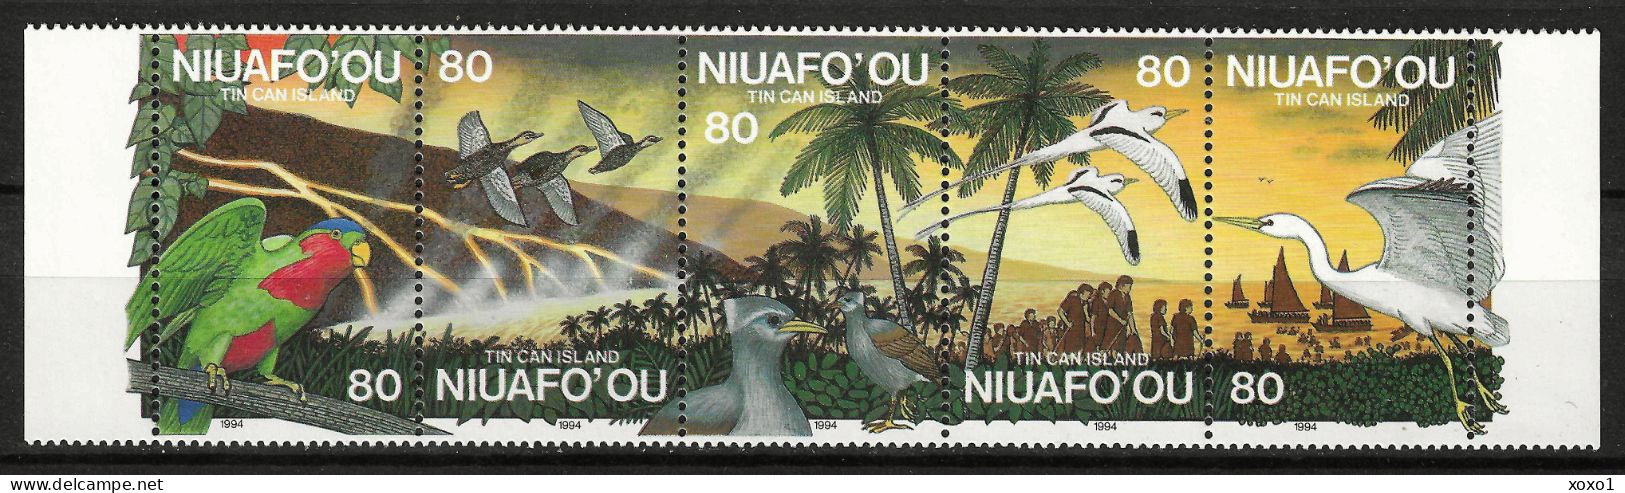 Niuafo'Ou 1994 MiNr. 269 - 273 Niuafo'ou-Insel Geology, Volcanos, Volcanic Eruption, Birds  5v MNH** 14,00 € - Tonga (1970-...)